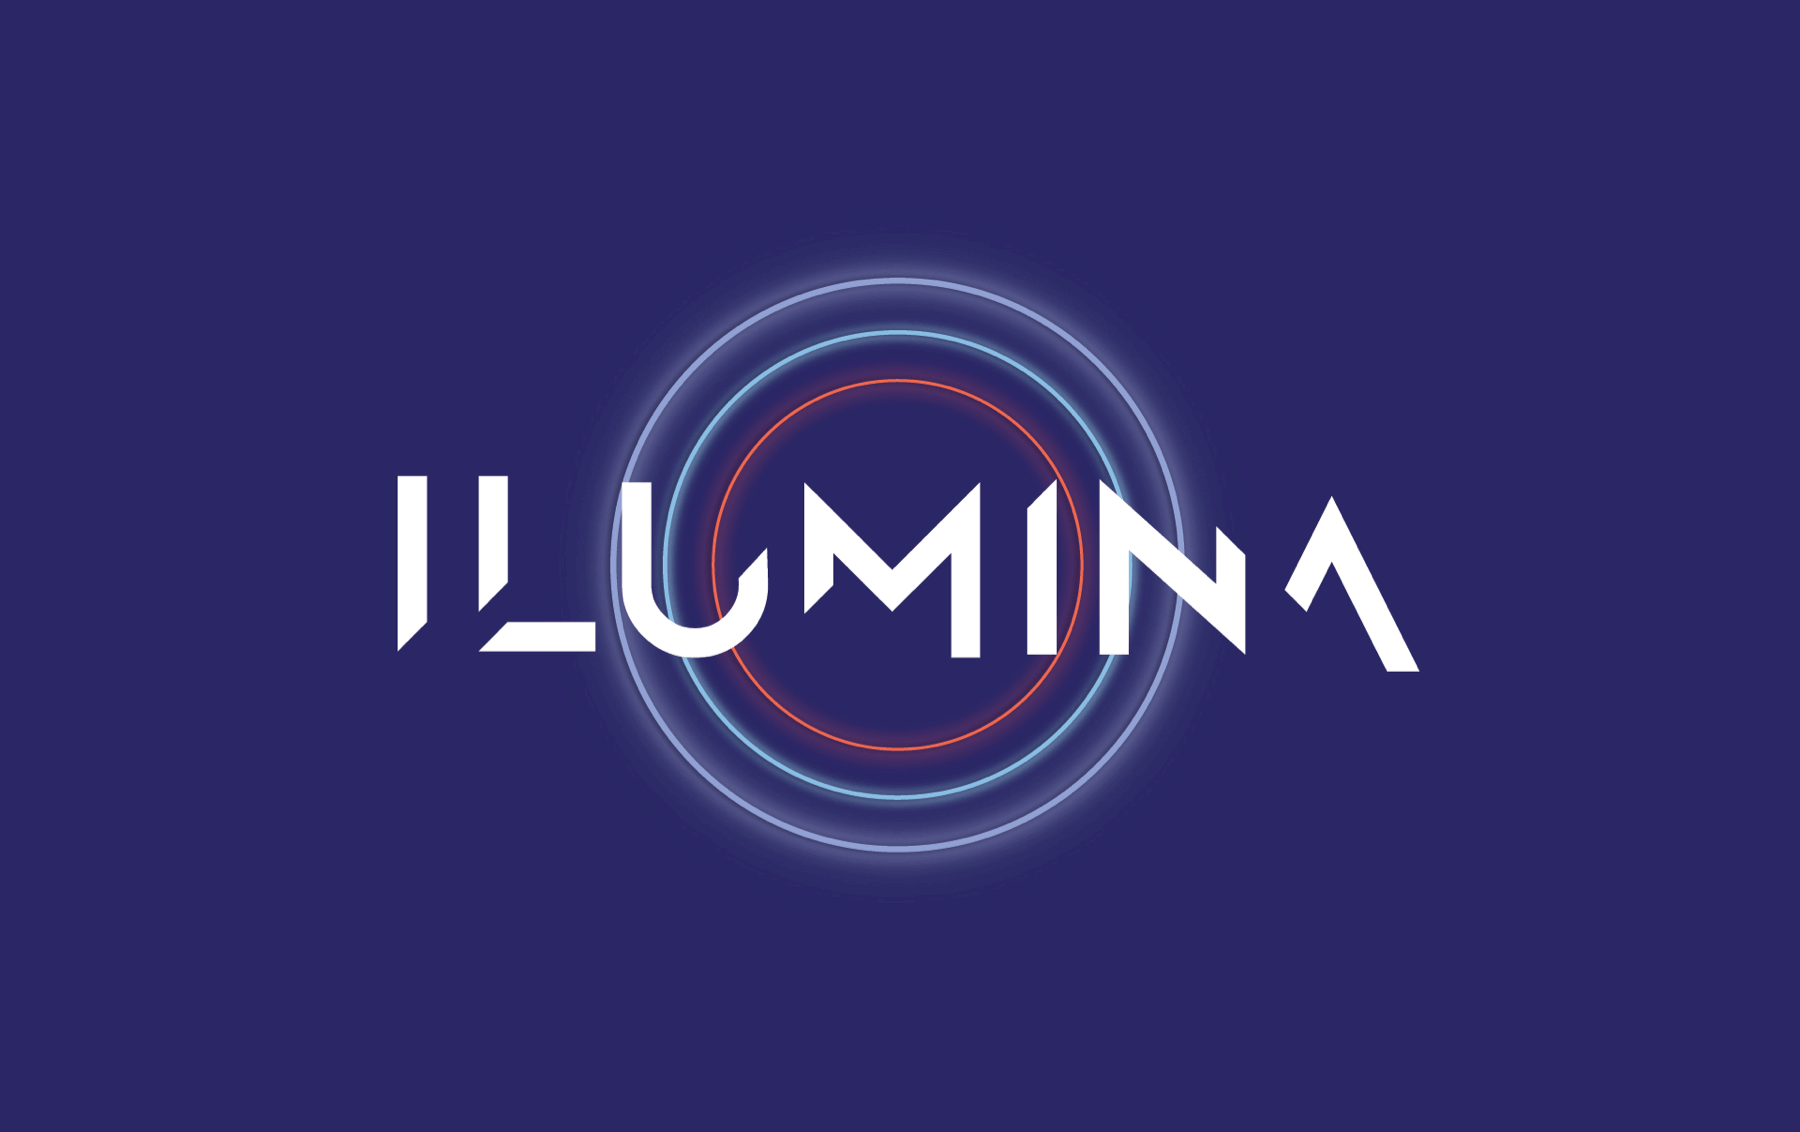 Ilumina Company